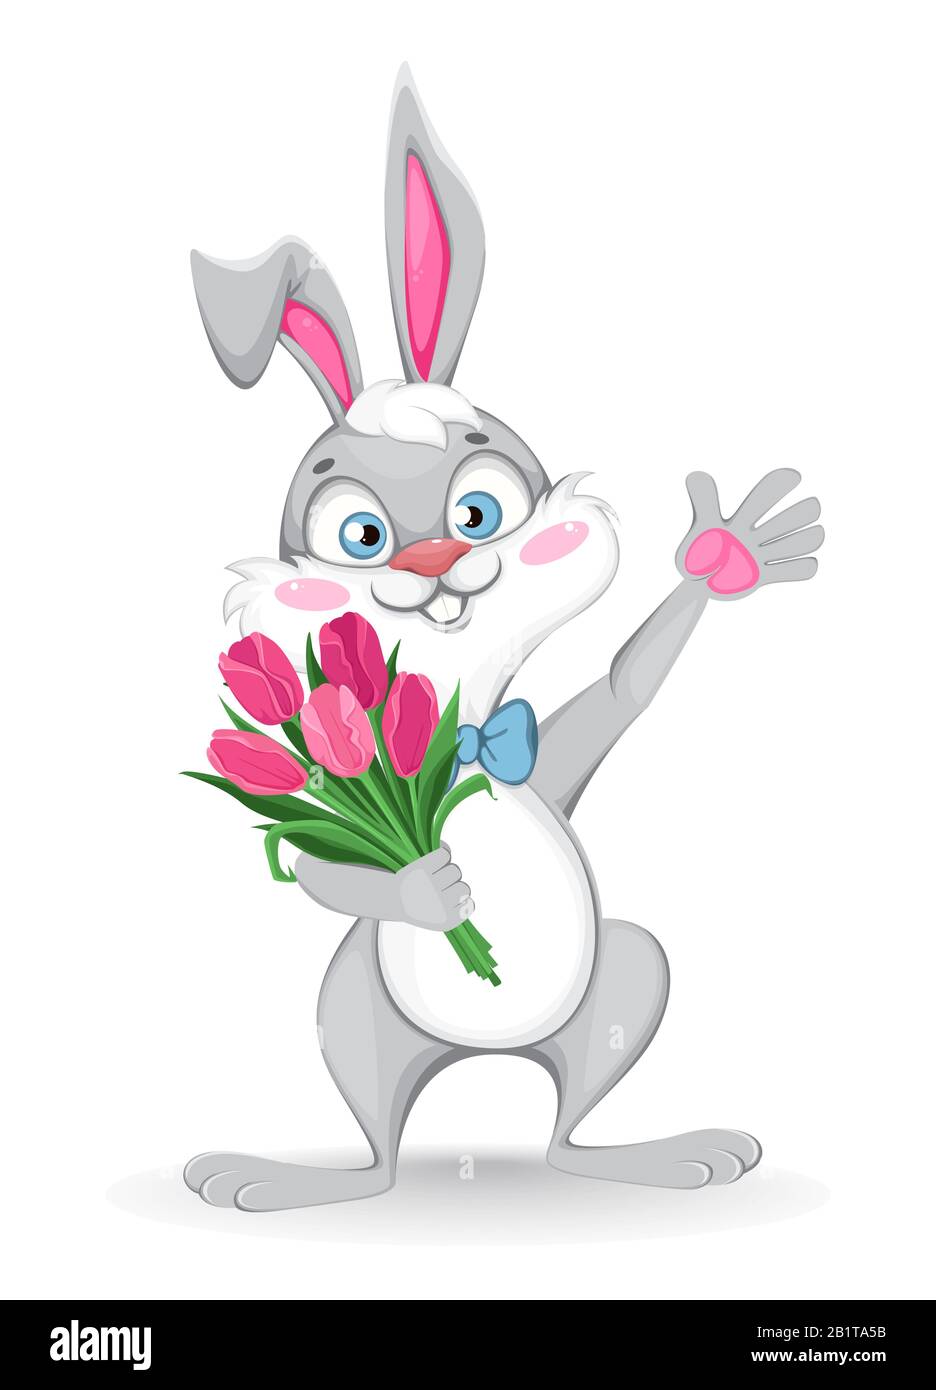 Frohe Ostern Grußkarte. Lustiger Zeichentrickkaninchen hält einen Blumenstrauß mit Tulpen. Vektor-Darstellung auf weißem Hintergrund Stock Vektor